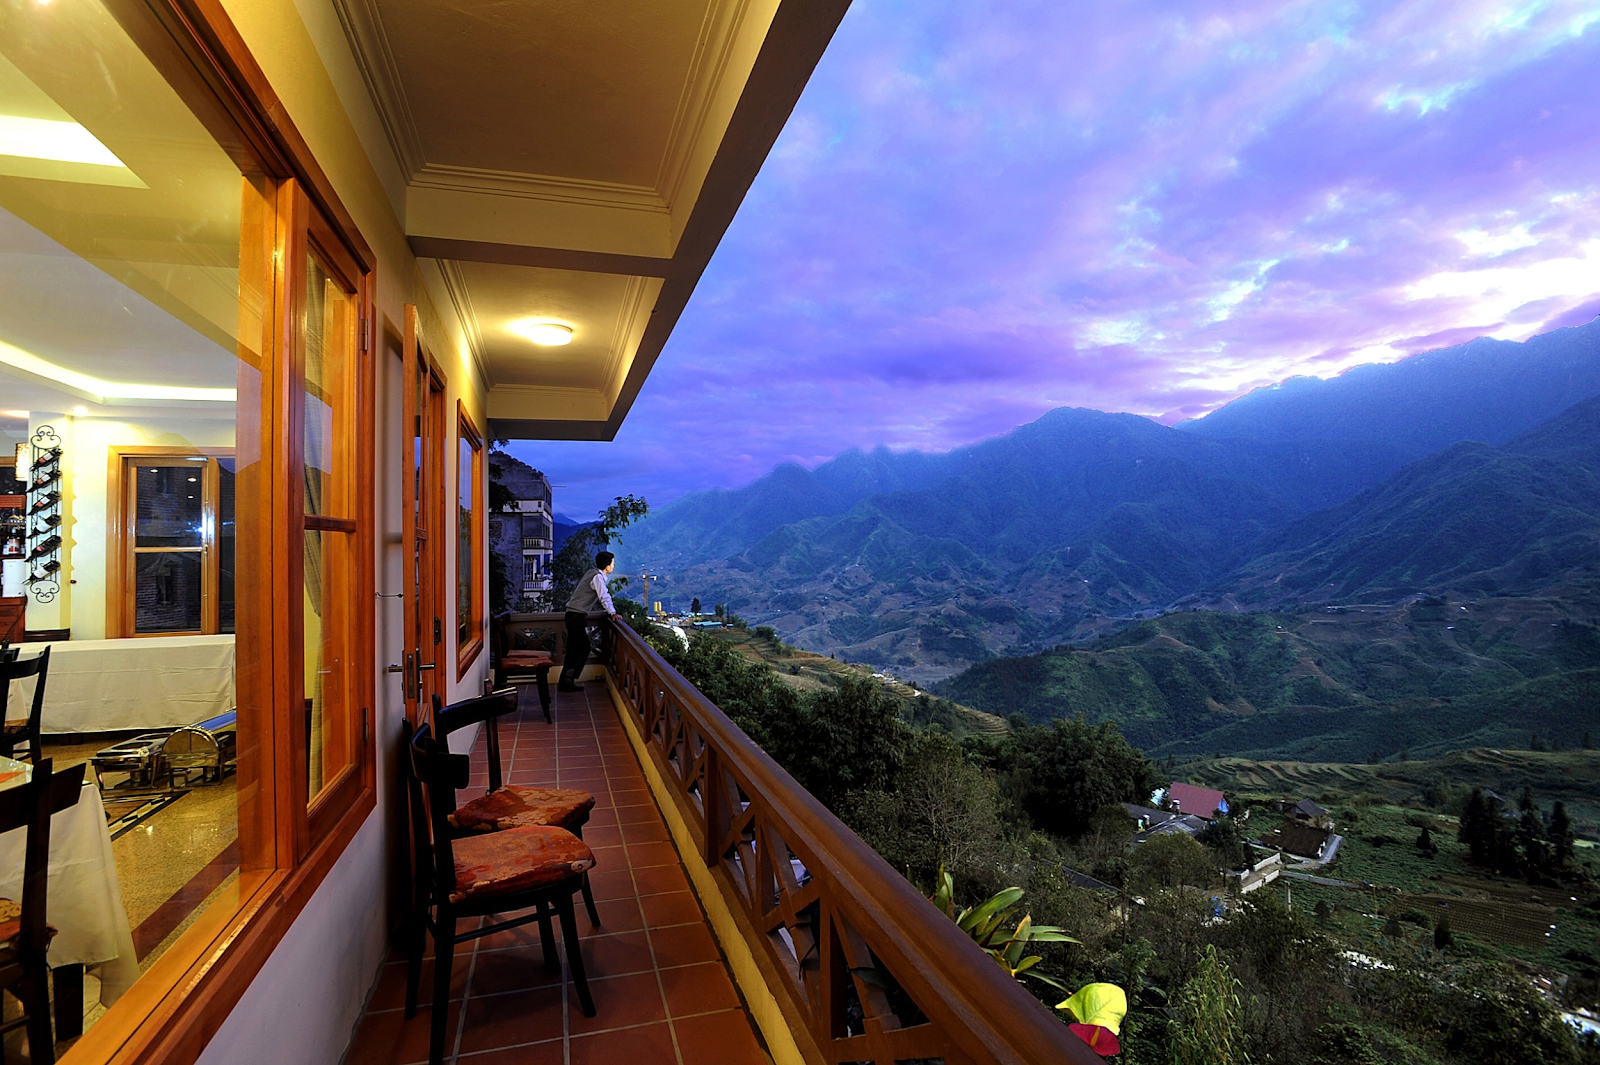 Khách sạn Sunny Mountain cho du khách cái nhìn về Sapa tuyệt đẹp (Nguồn: dichoisapa.com)